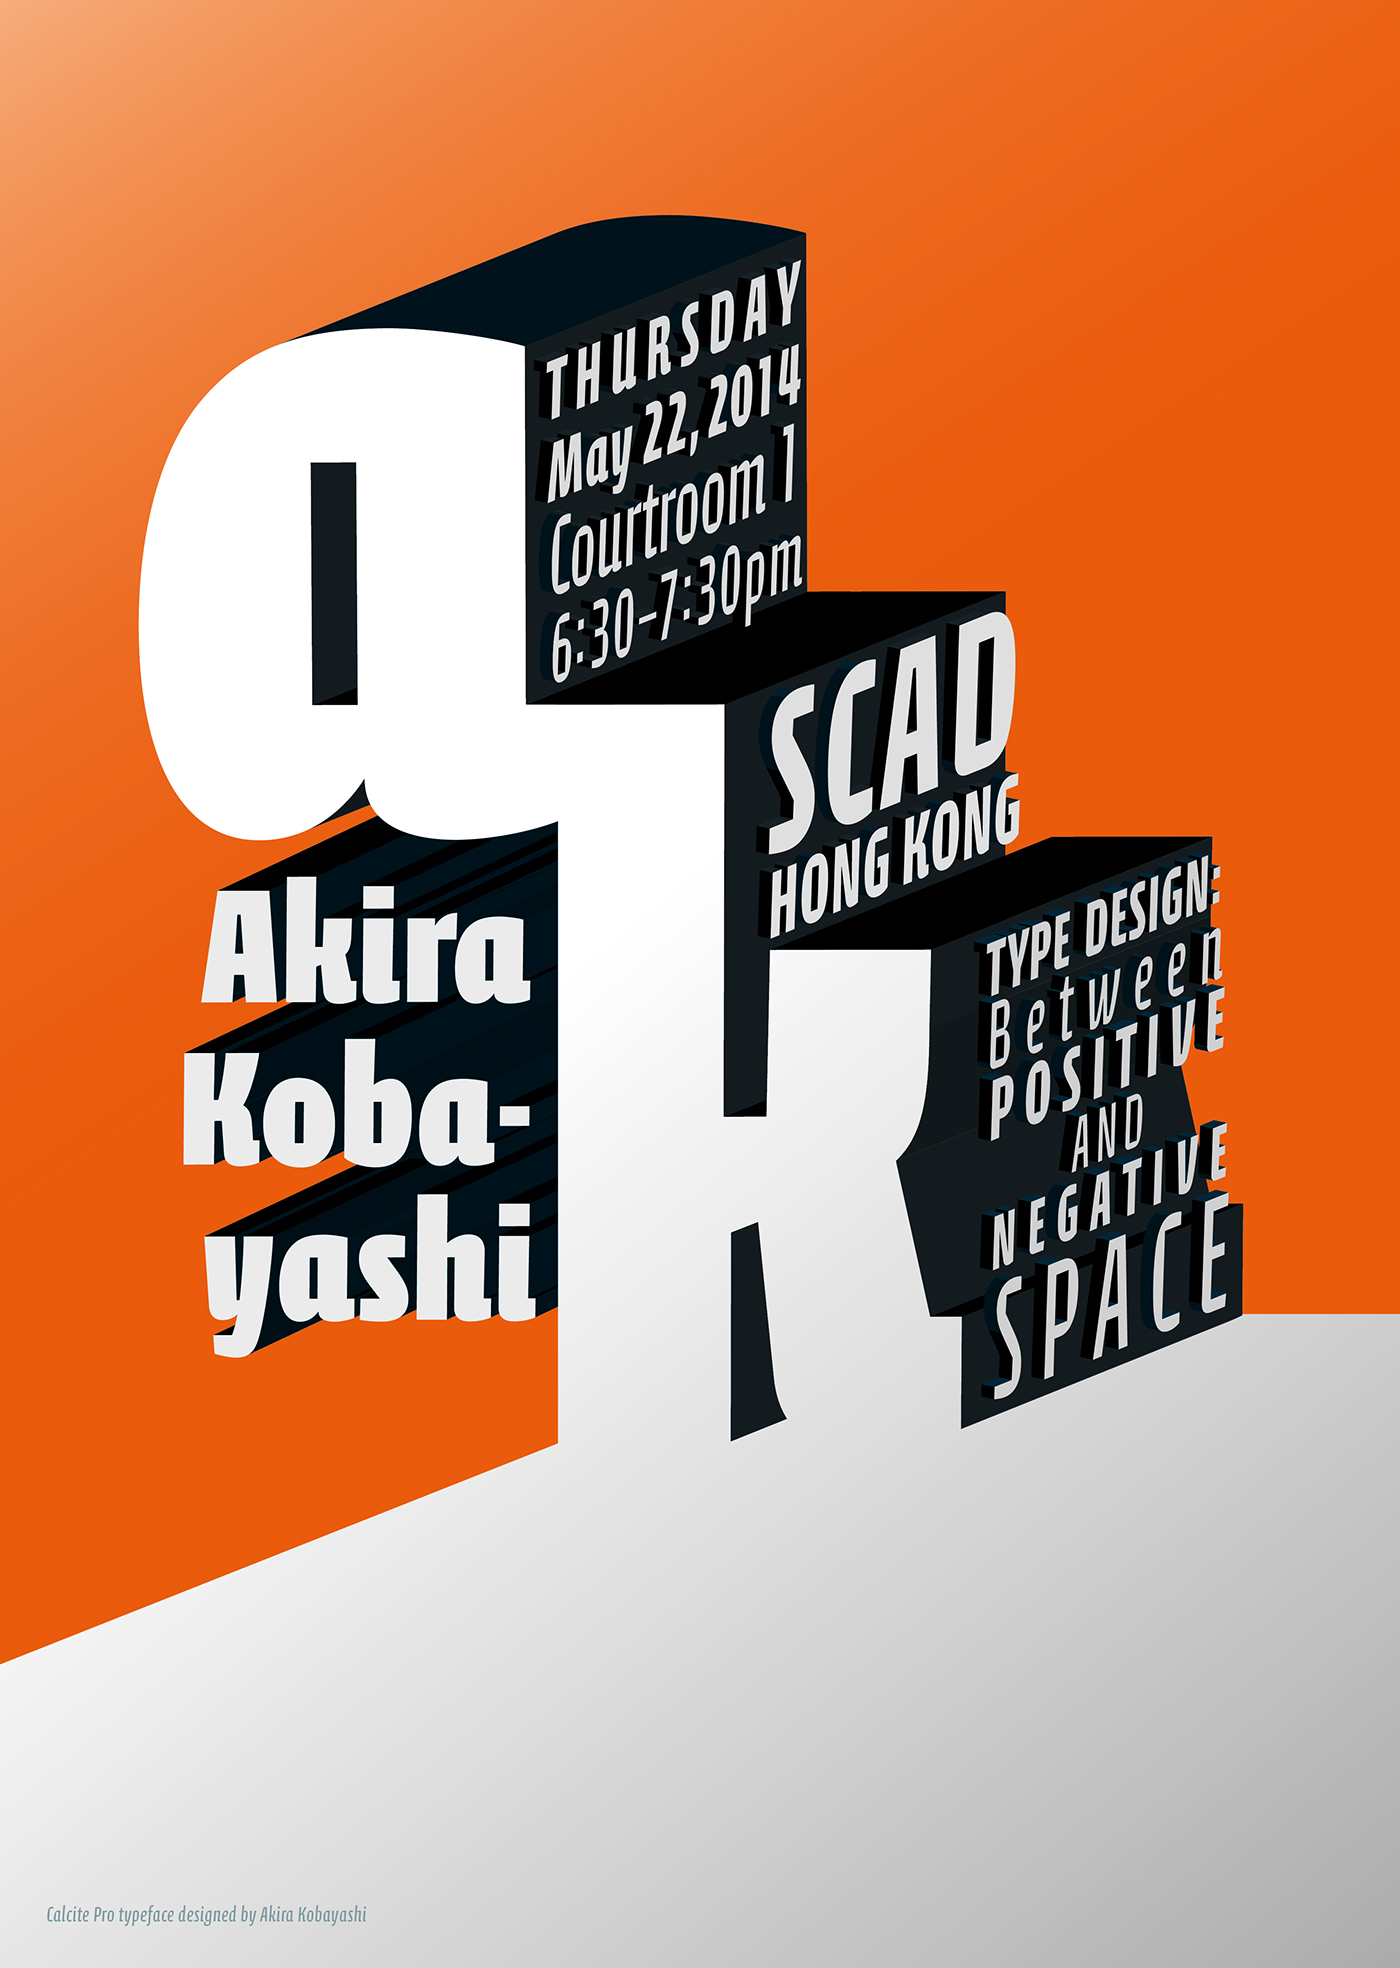 SCAD CALCITE Typeface typographic poster type font monotype type design akira Kobayashi Hong Kong